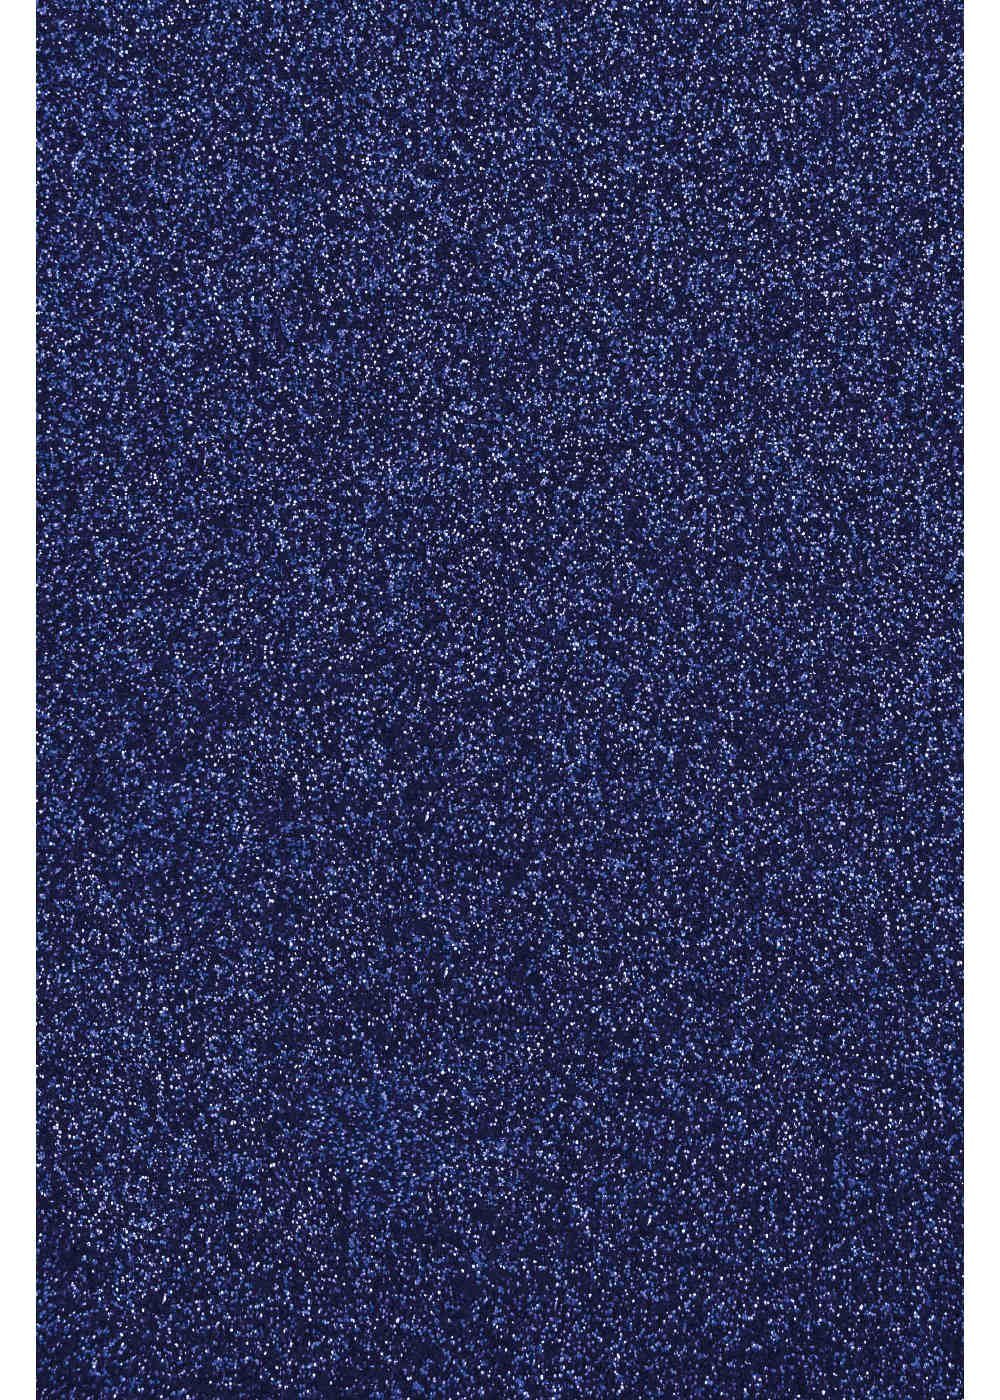 Hilltop Transparentpapier Glitzer Transferfolie/Textilfolie zum Blue Royal Aufbügeln, zum Plottern perfekt